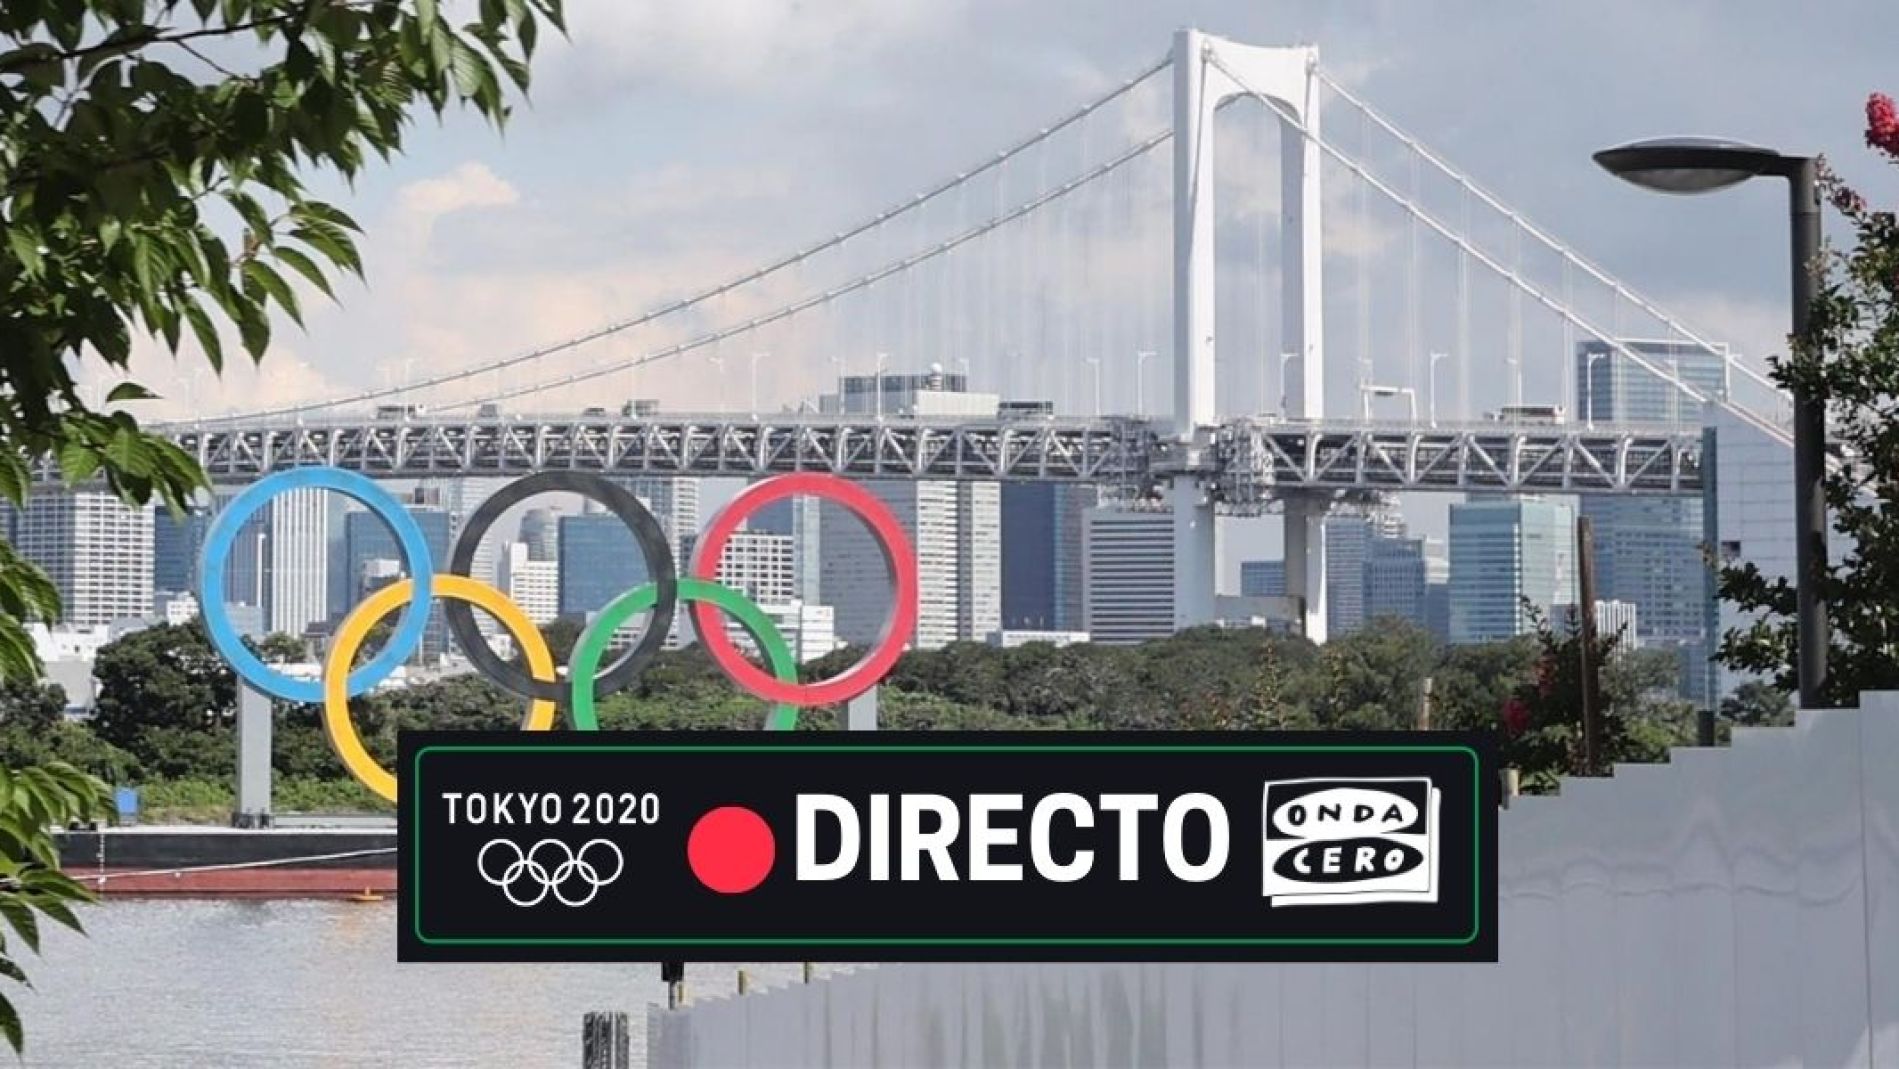 Juegos Olímpicos Tokio 2020, en directo jornada de hoy,lunes 2 de agosto Onda Cero Radio